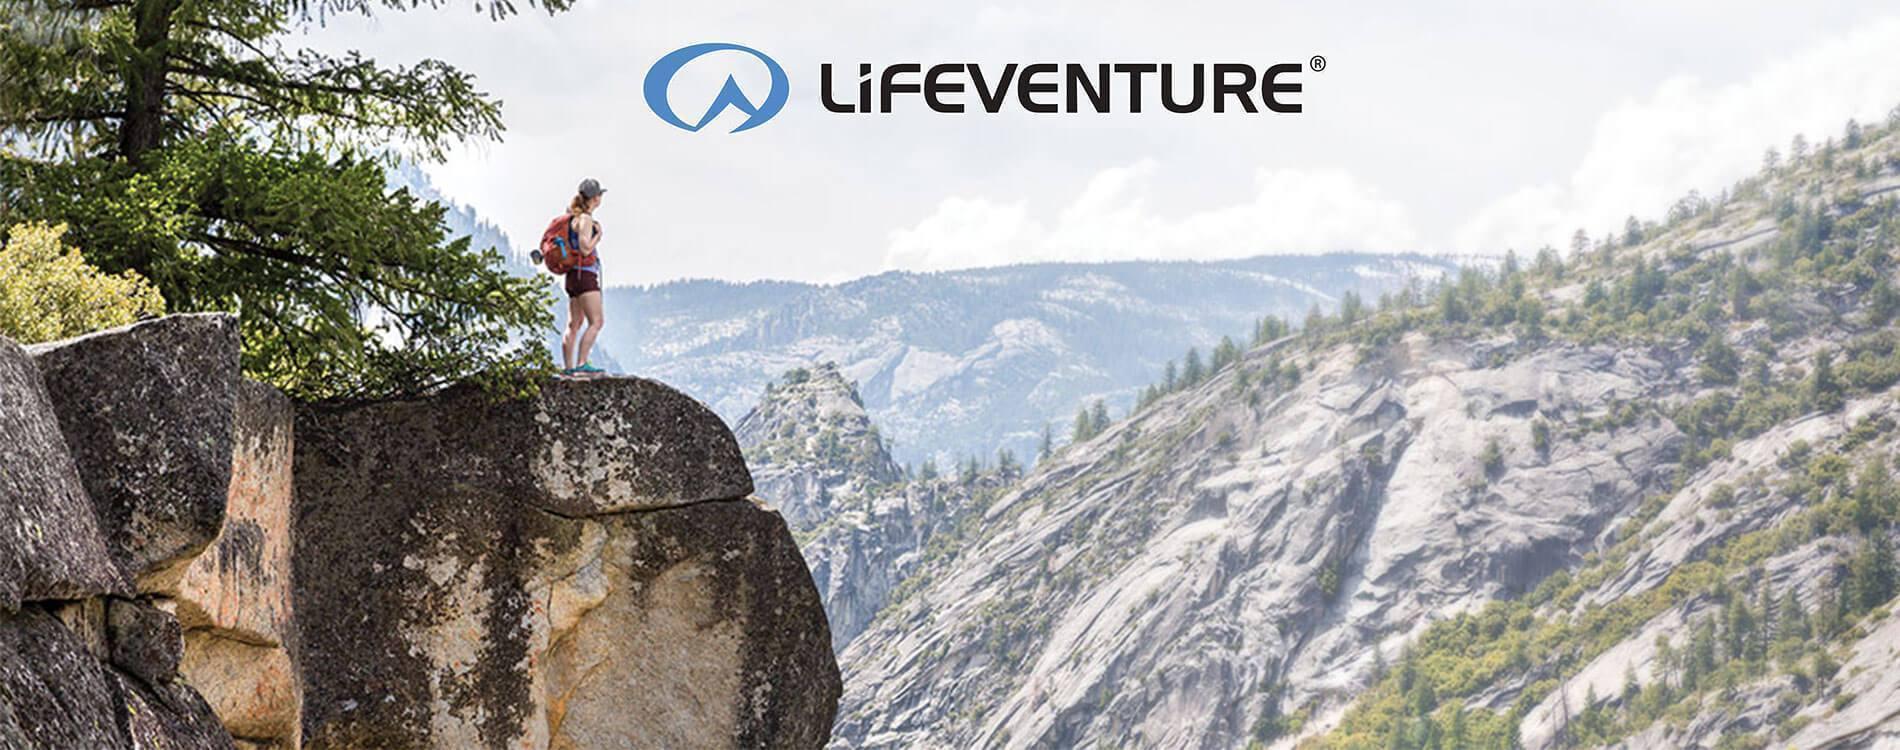 Lifeventure - Allt du behöver under din resa - TacNGear